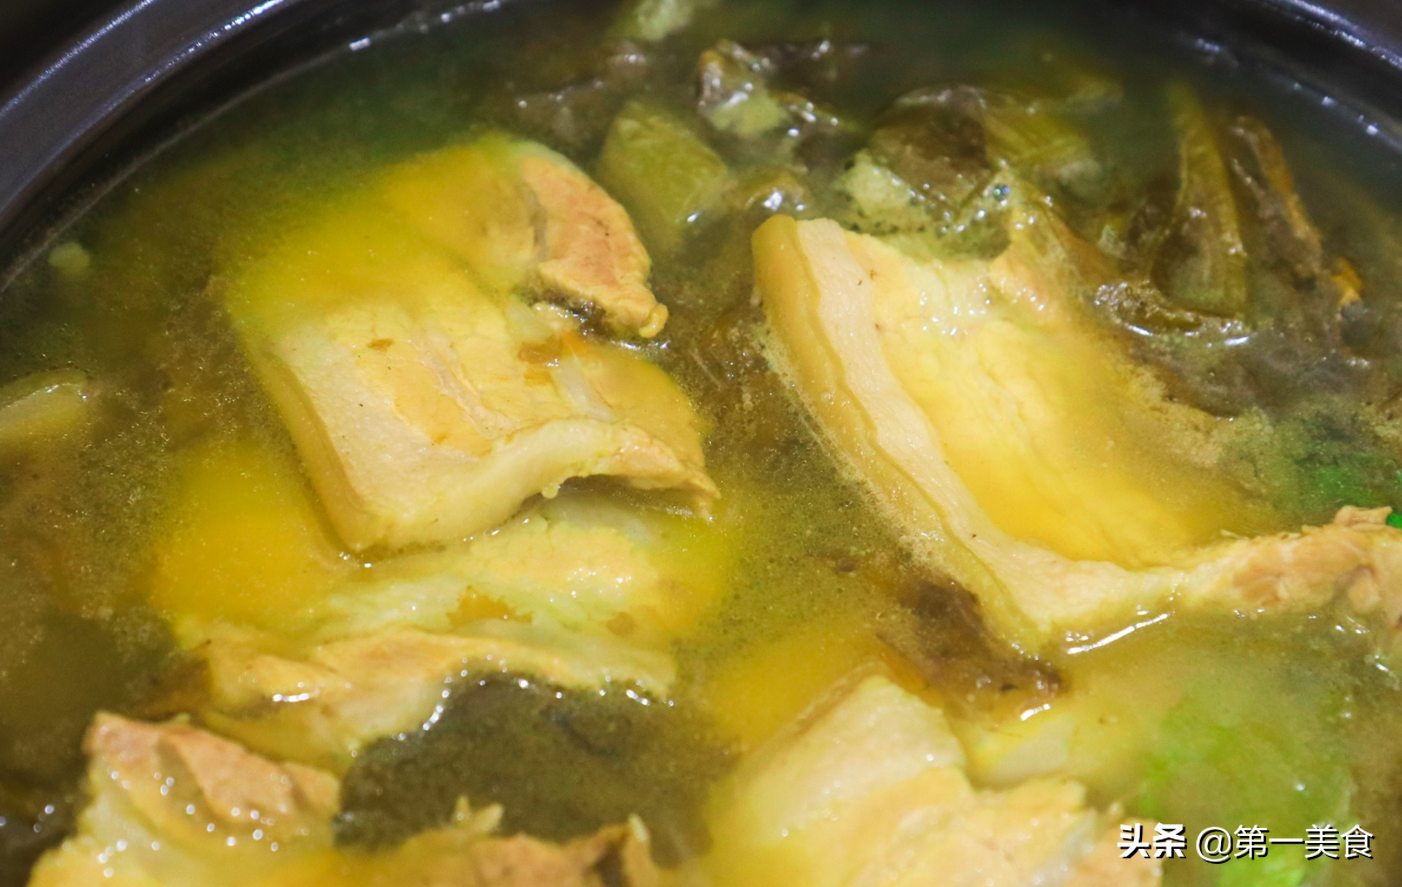 酸菜炖肉直接下锅绝对又腥又苦！正确做法要提前处理酸菜和肉